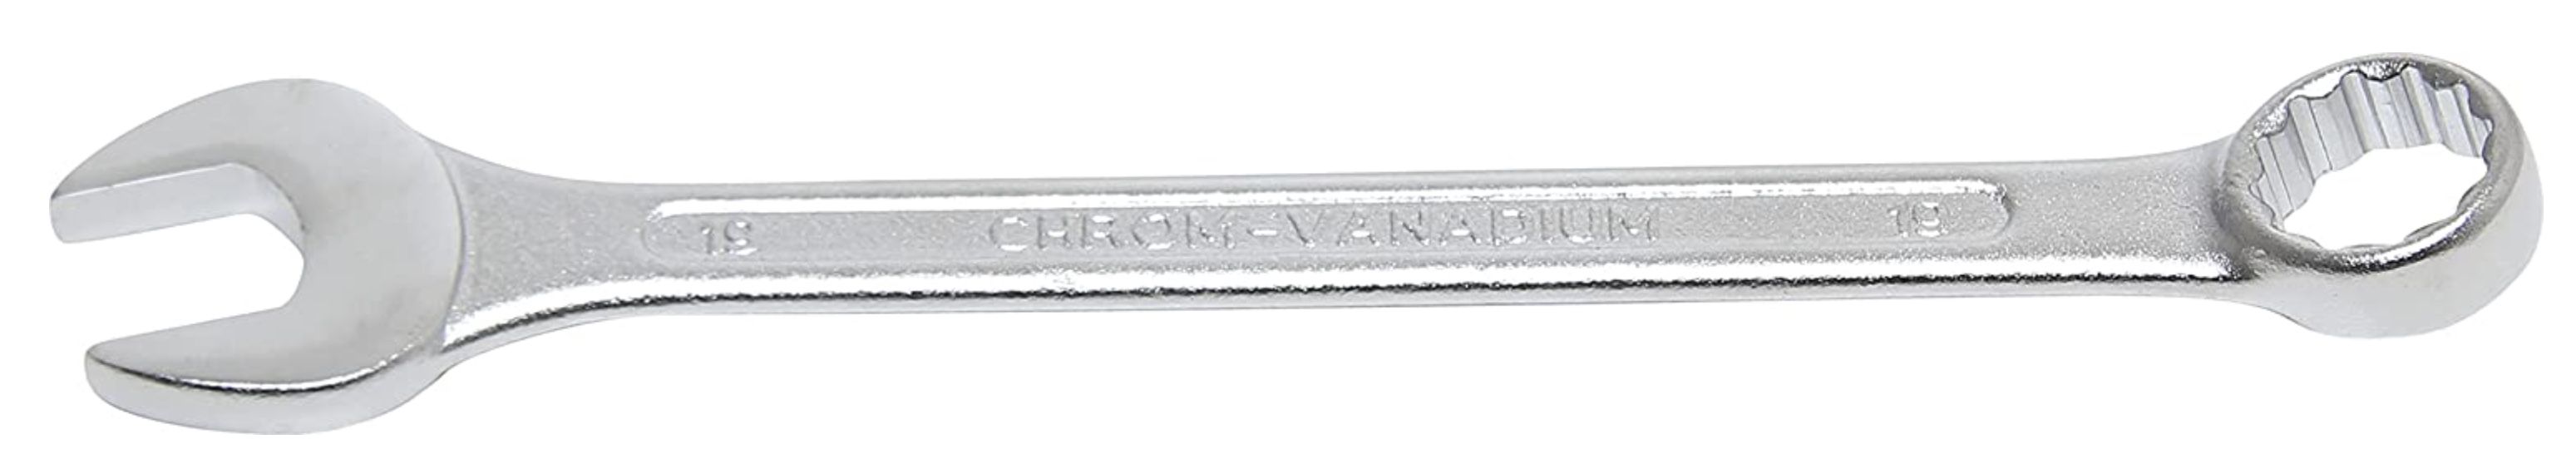 BGS Maul Ringschlüssel Satz in SW 6   19 mm inkl. Tetron Rolltasche für 6,44€ (statt 10€)   Prime